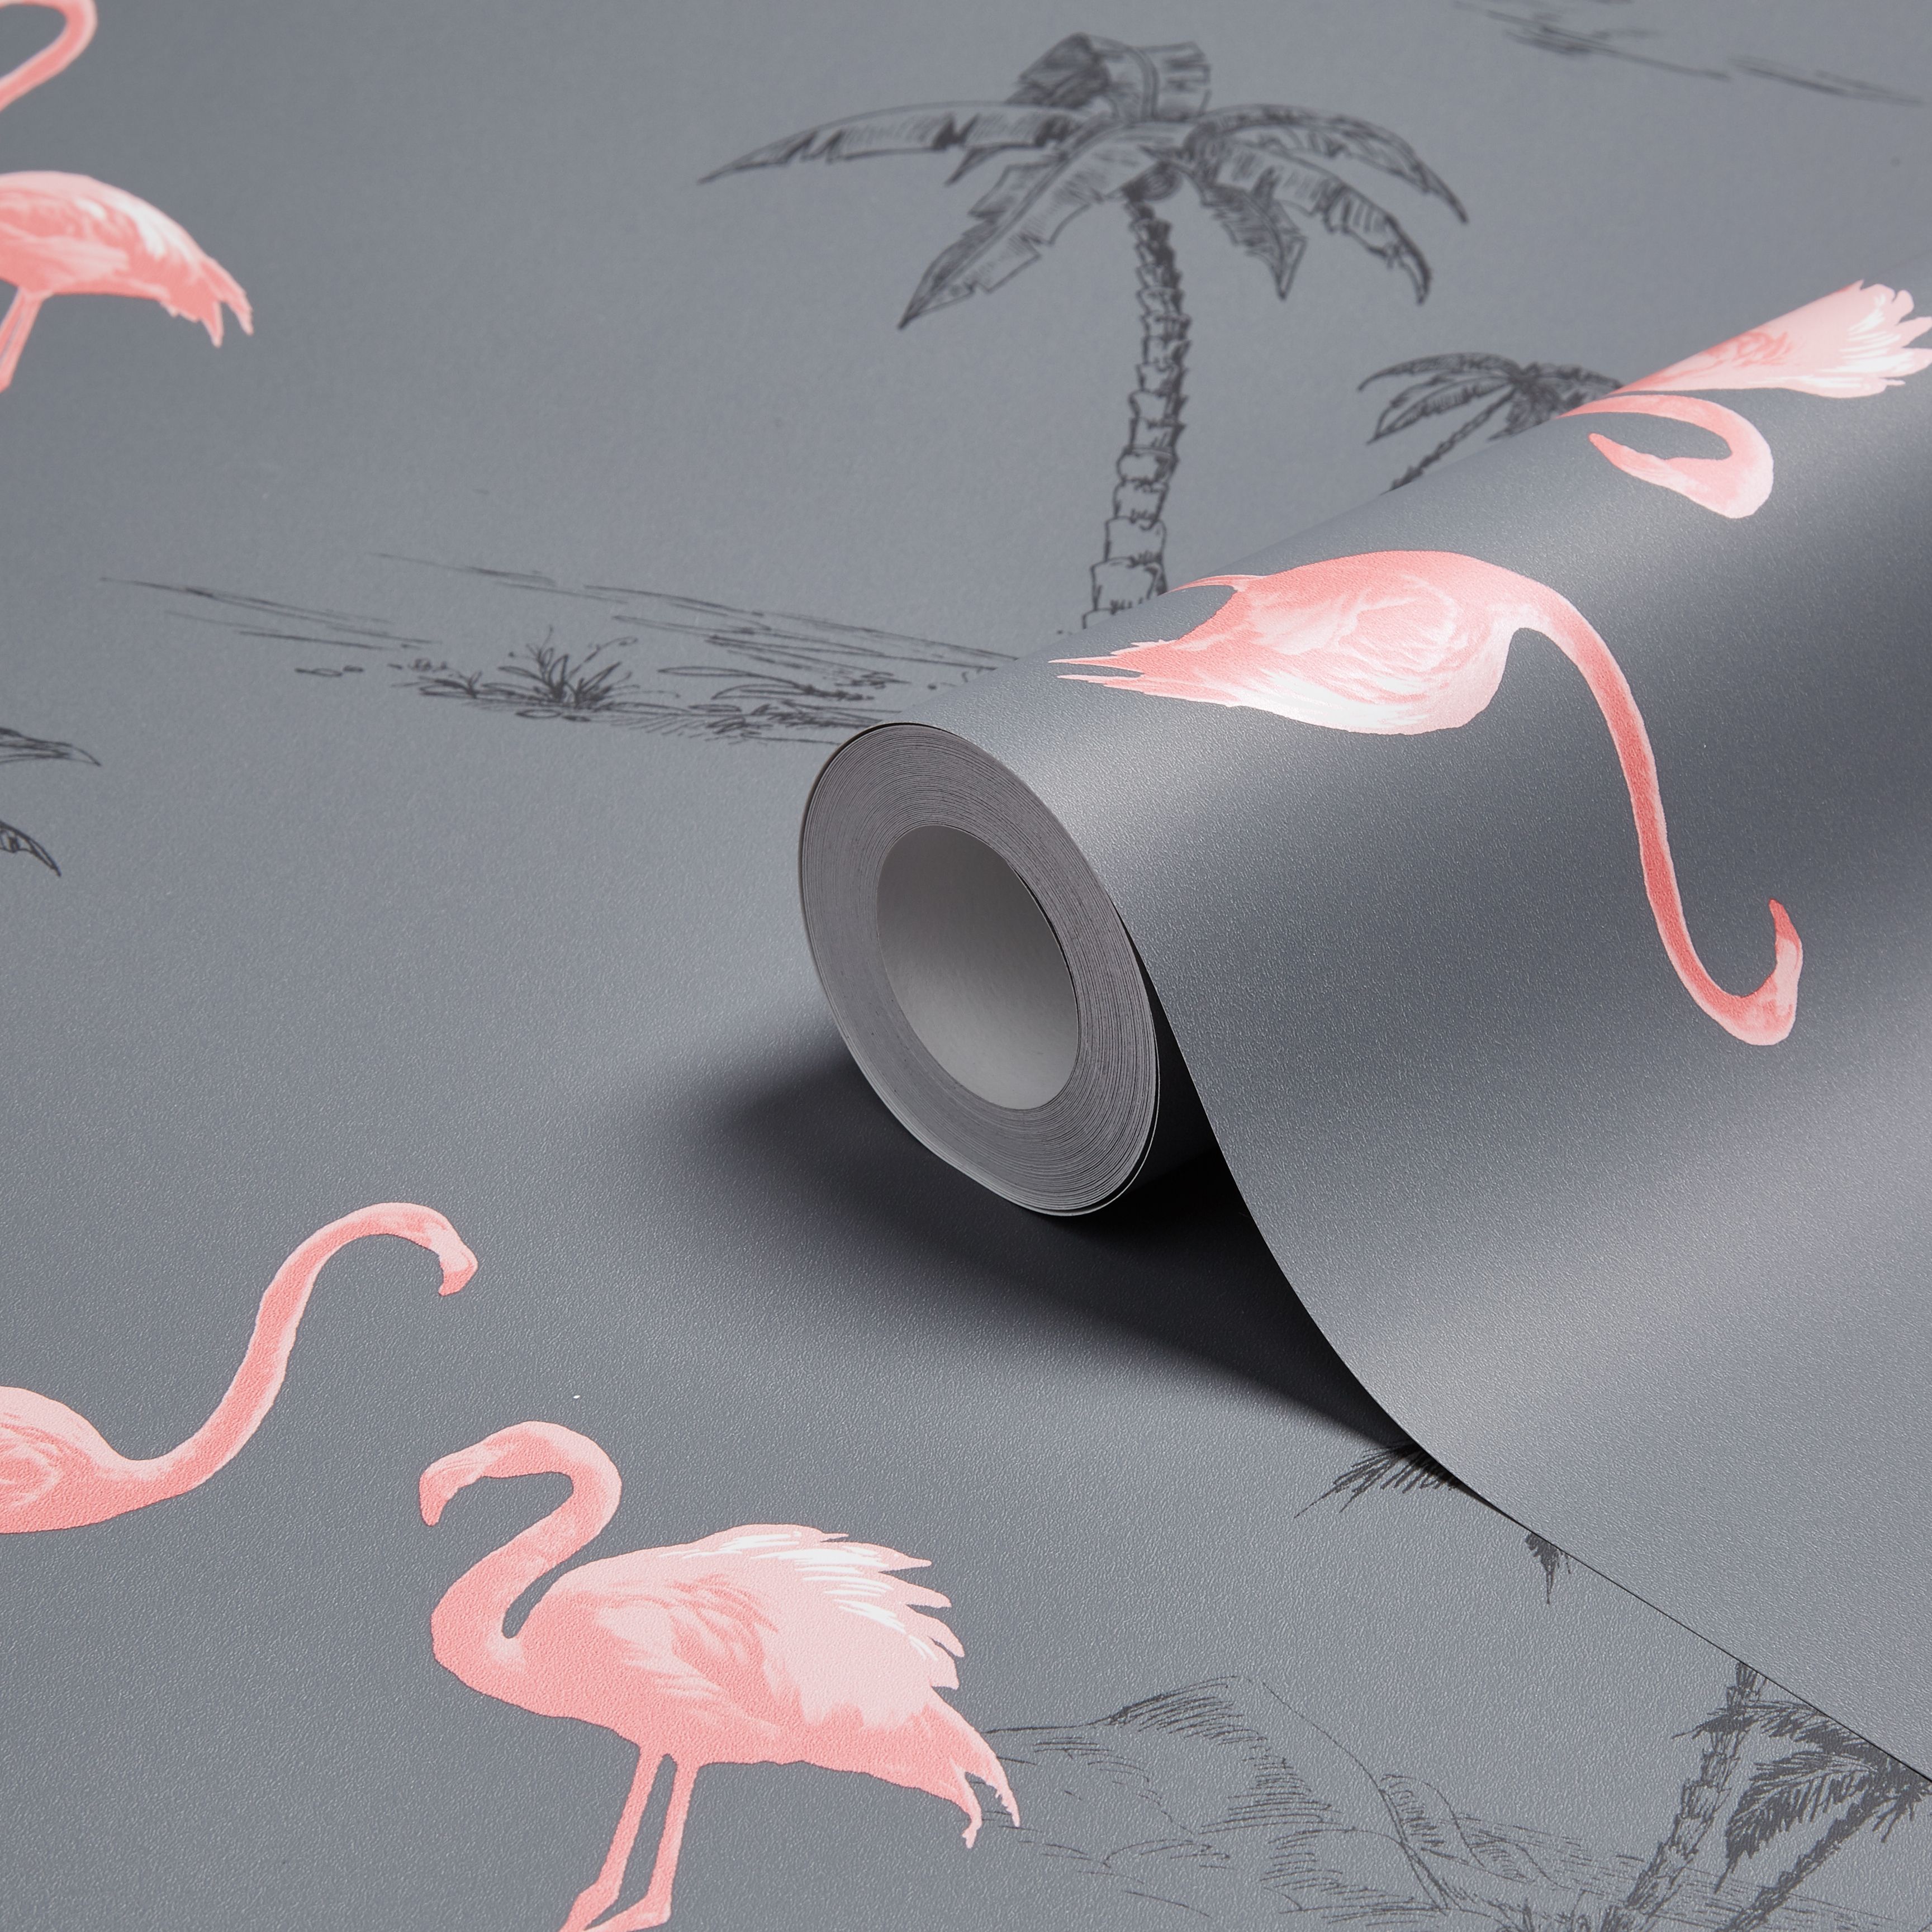 B And Q Flamingo - HD Wallpaper 